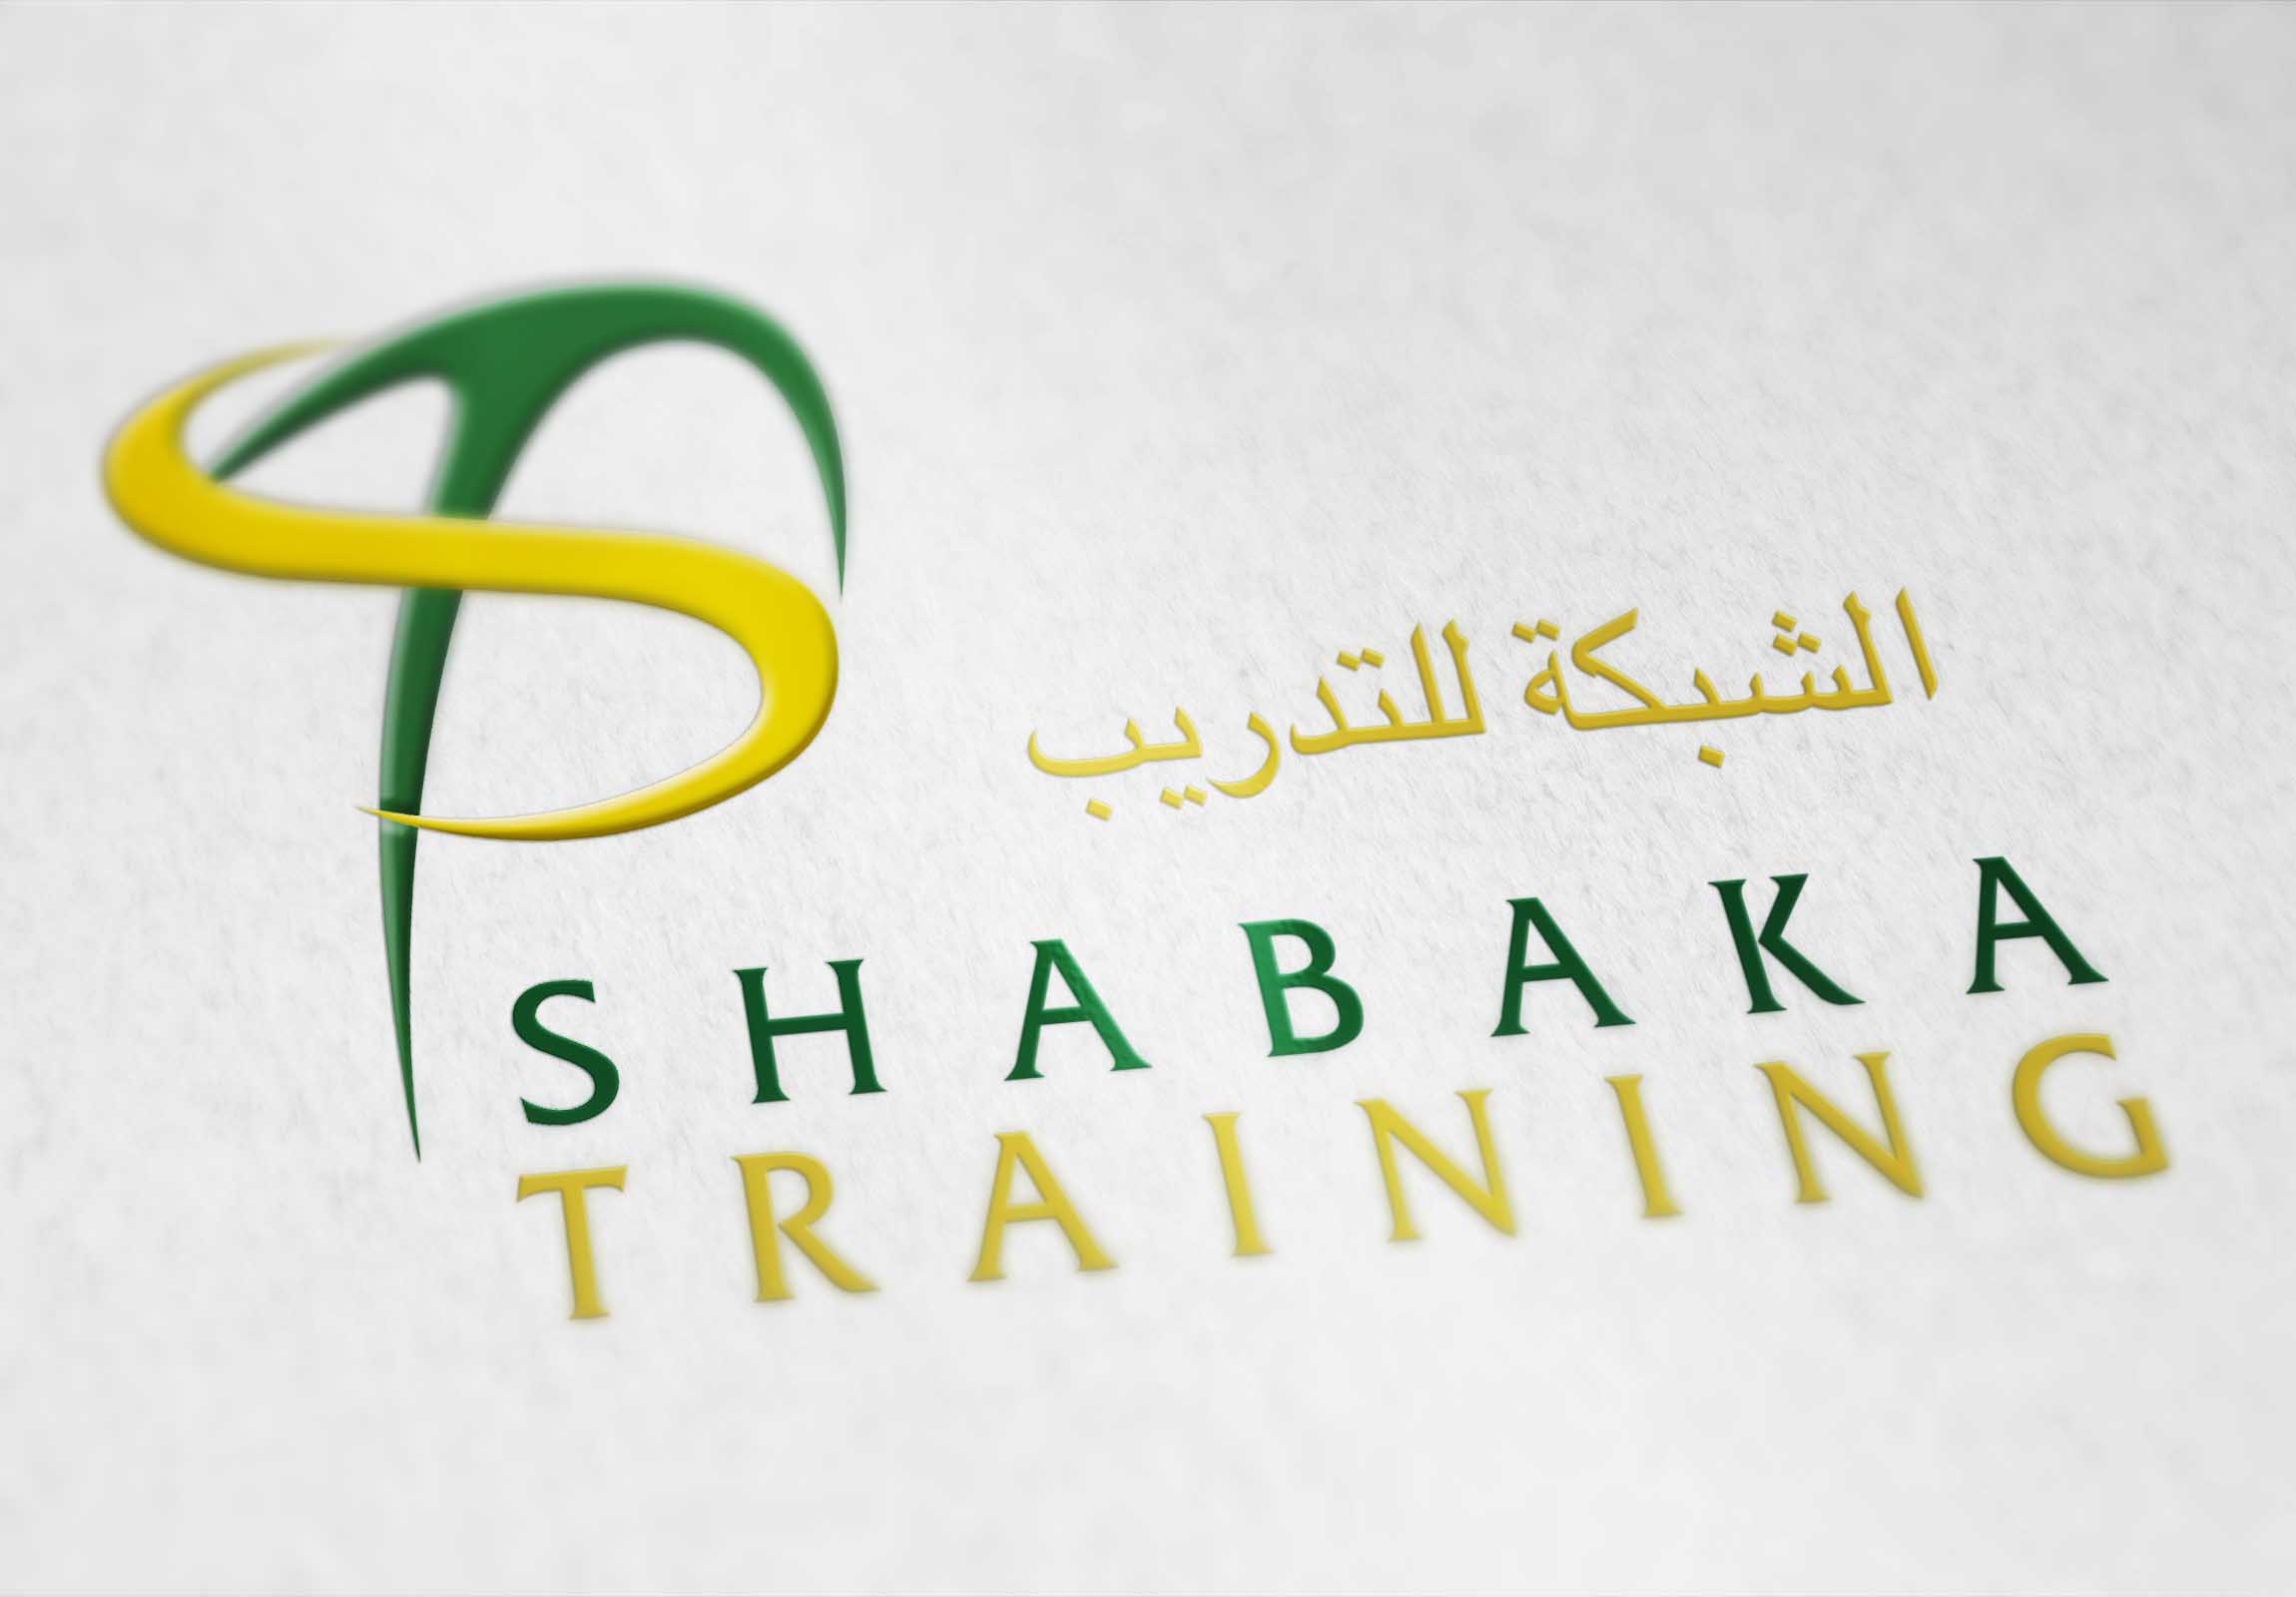 Shabaka Training - Identity